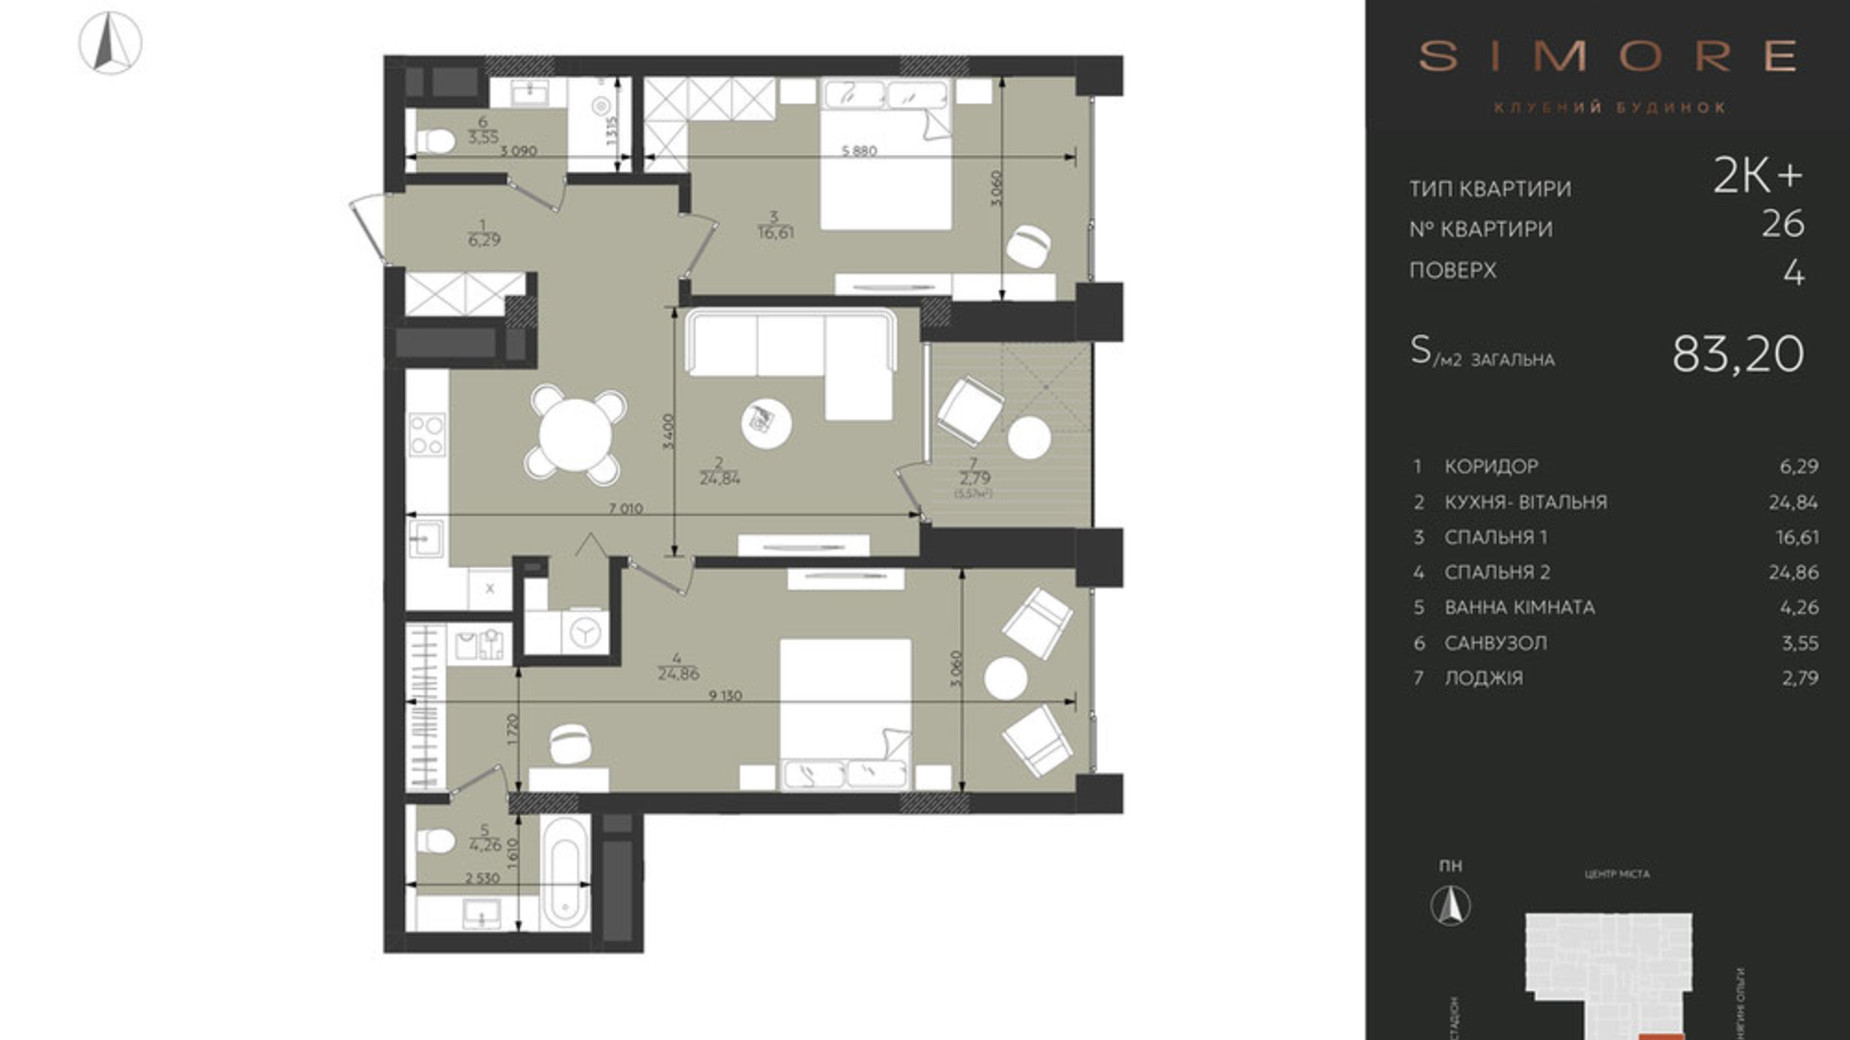 Планировка 2-комнатной квартиры в Клубный дом Simore 83.2 м², фото 694209